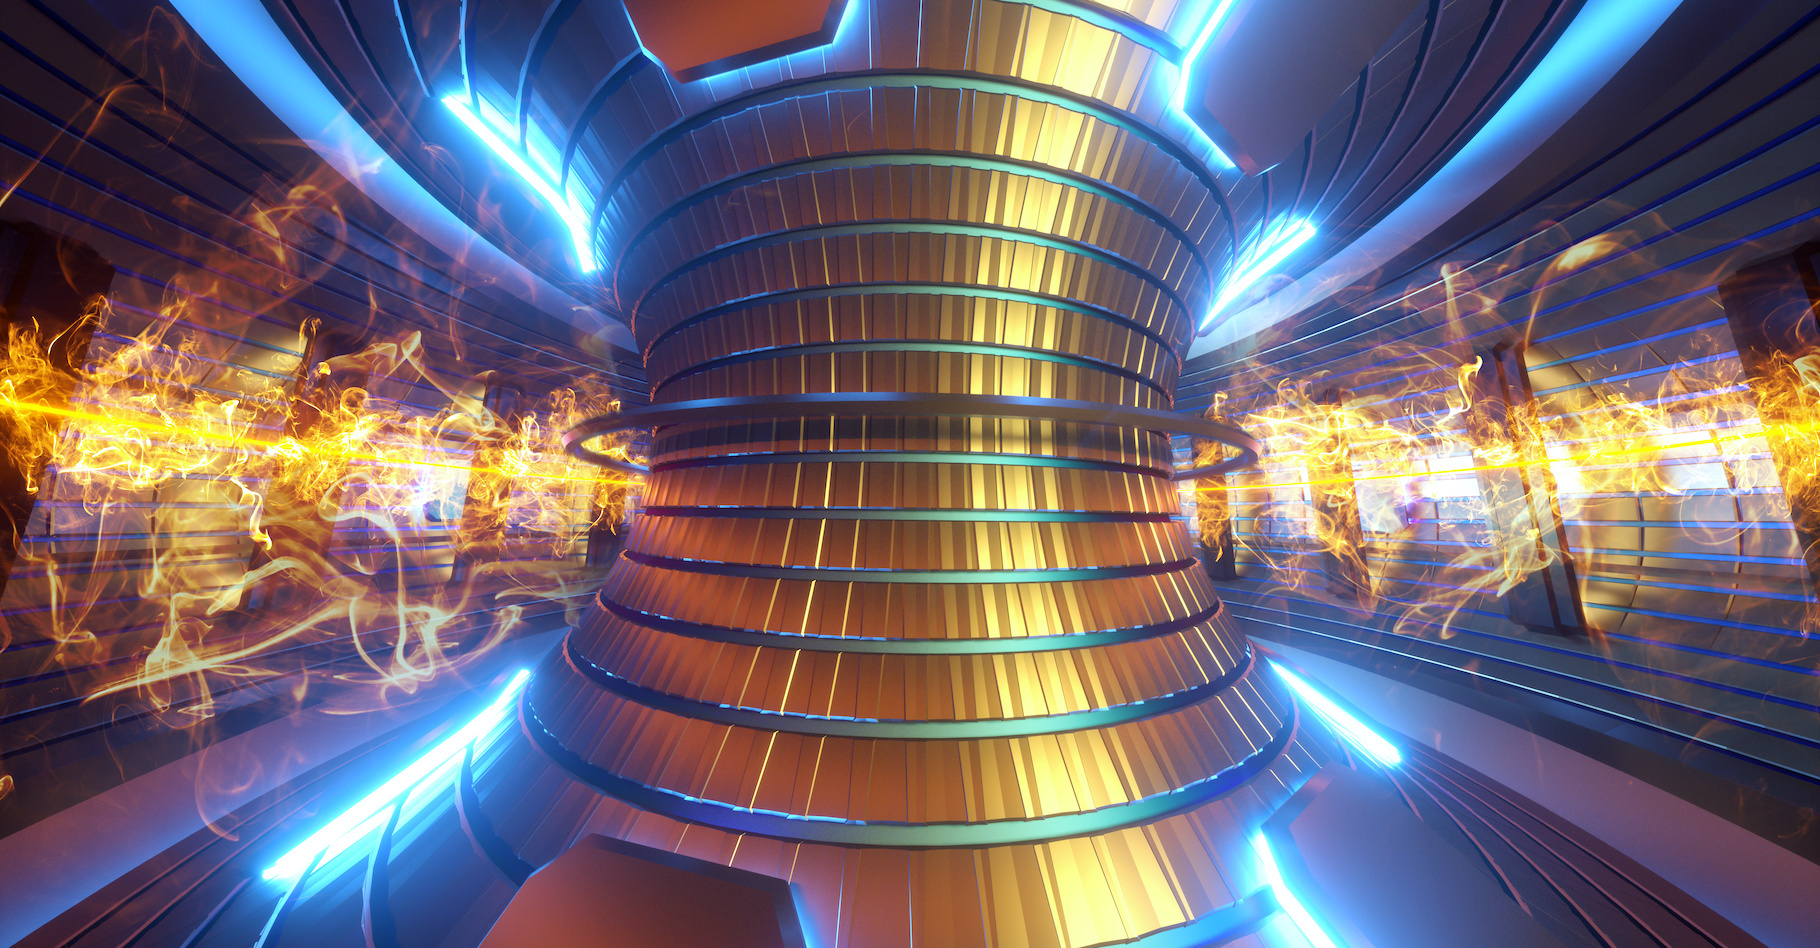 Un réacteur à fusion nucléaire pourrait fournir une énergie propre, décarbonée et quasi illimitée. © Aliaksandr Marko, Adobe Stock